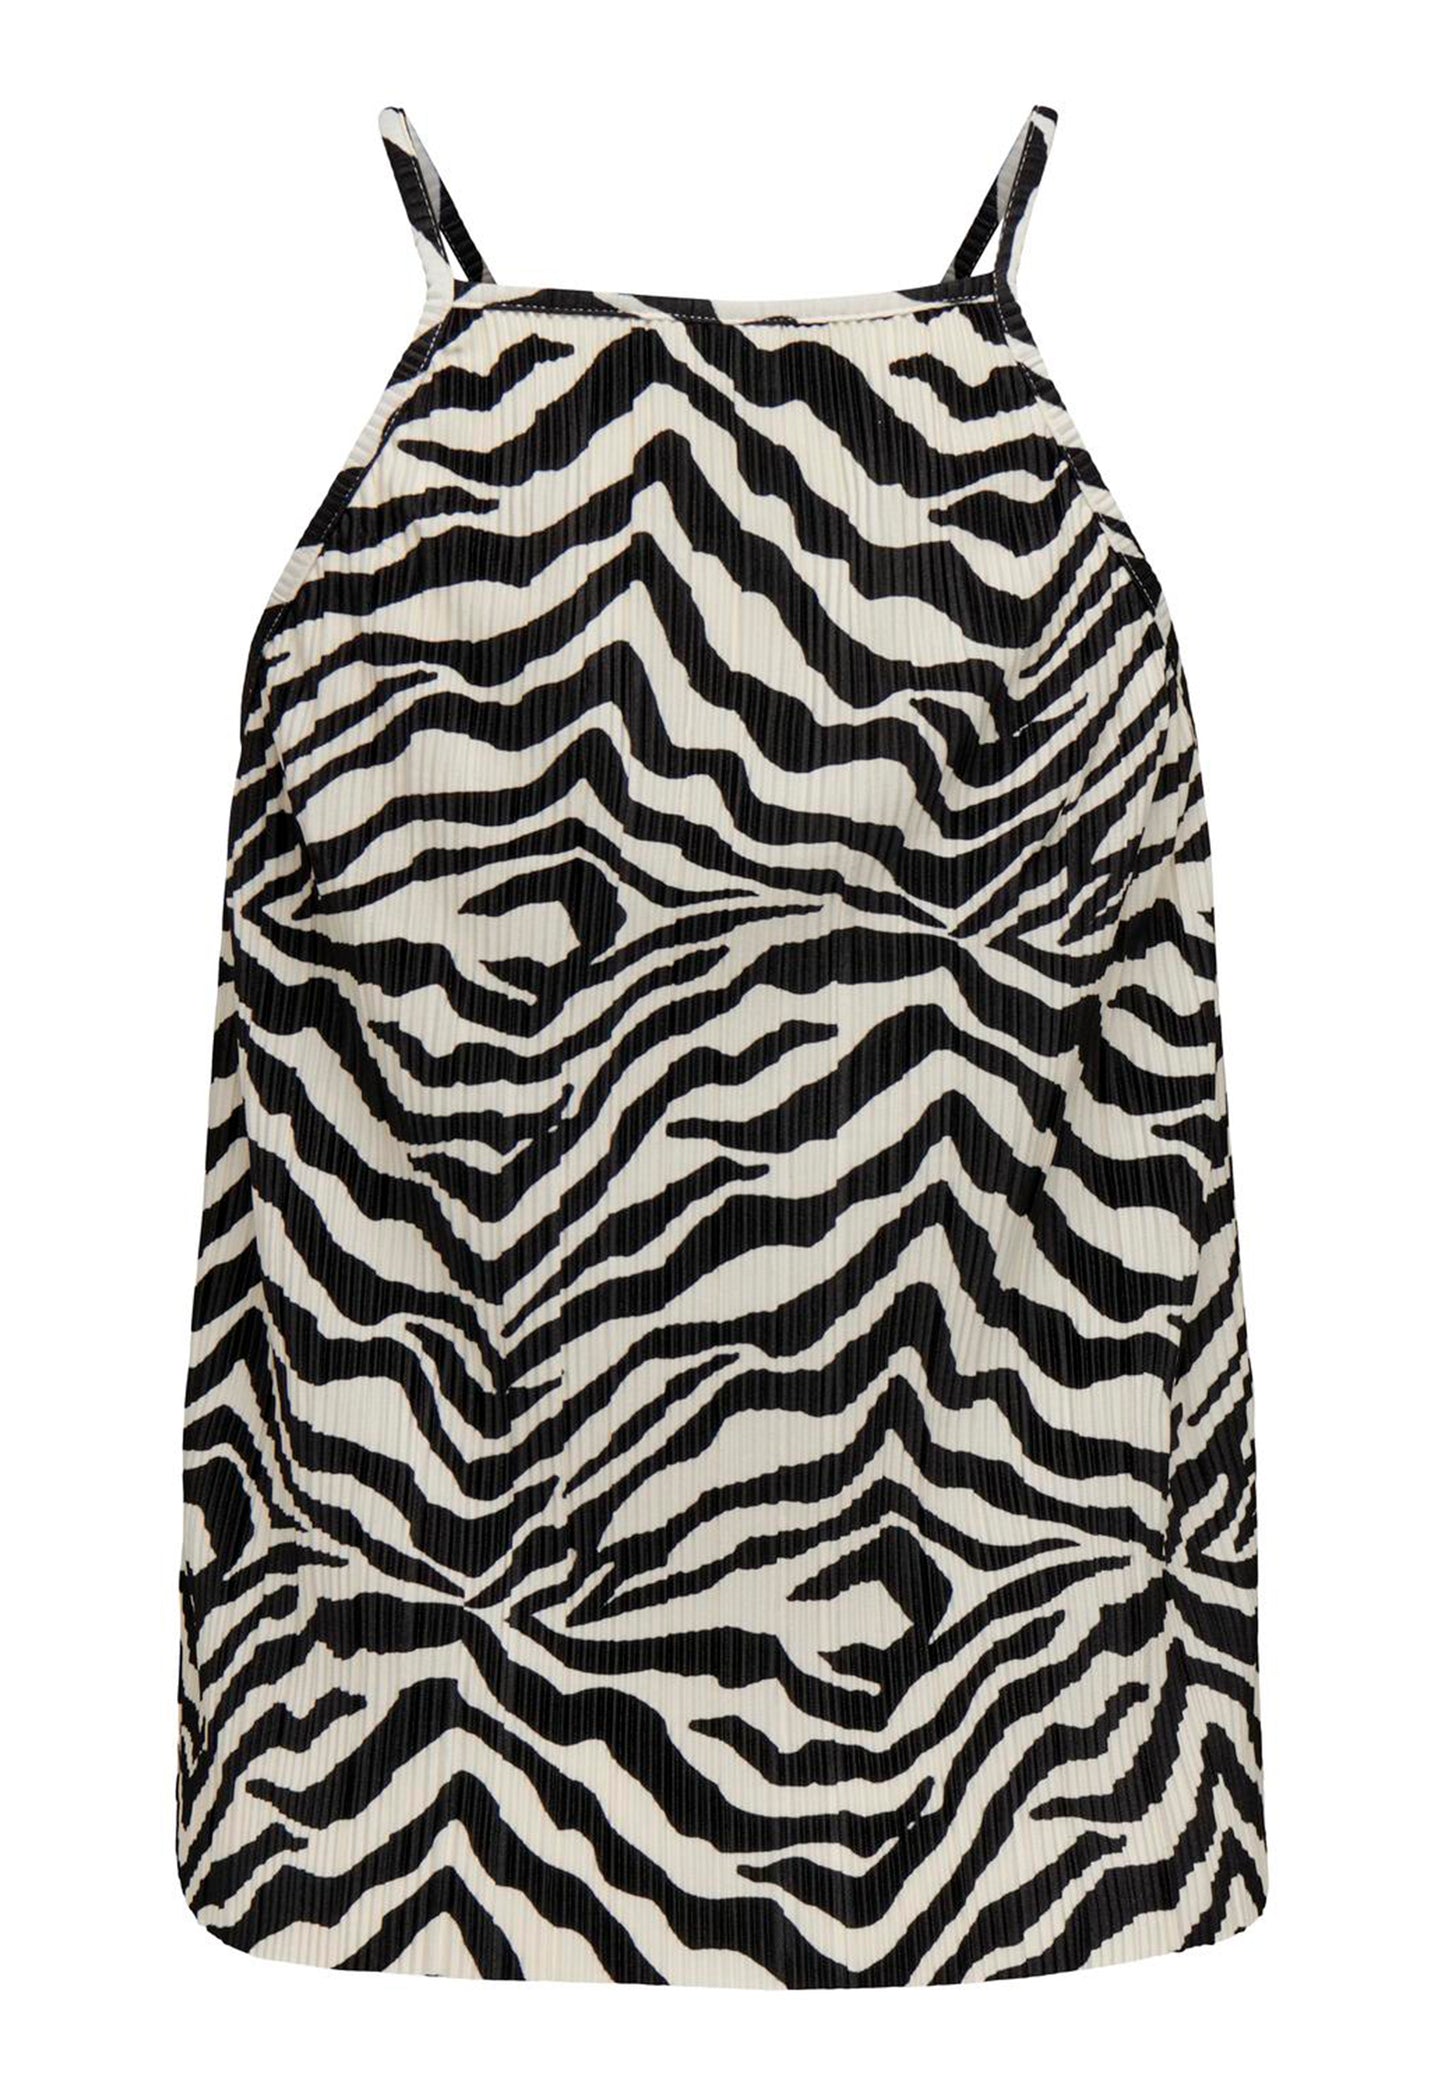 
                  
                    JDY Bravo Zebra Print Plisse Racer Strappy Vest Top i Black & Cream - One Nation Clothing
                  
                